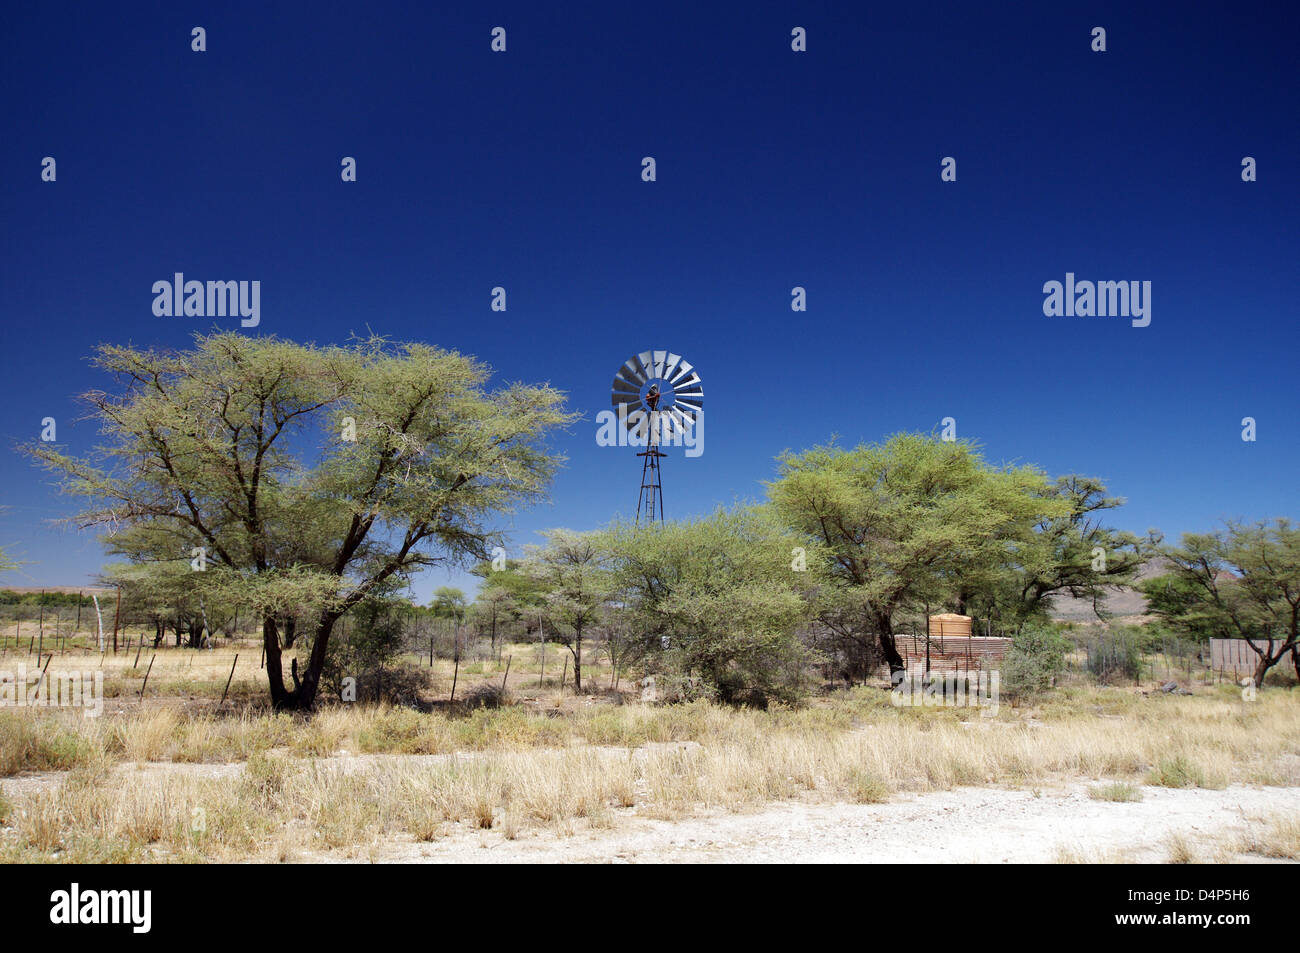 Típico paisaje de Namibia, con árboles de acacia y un windpump Foto de stock